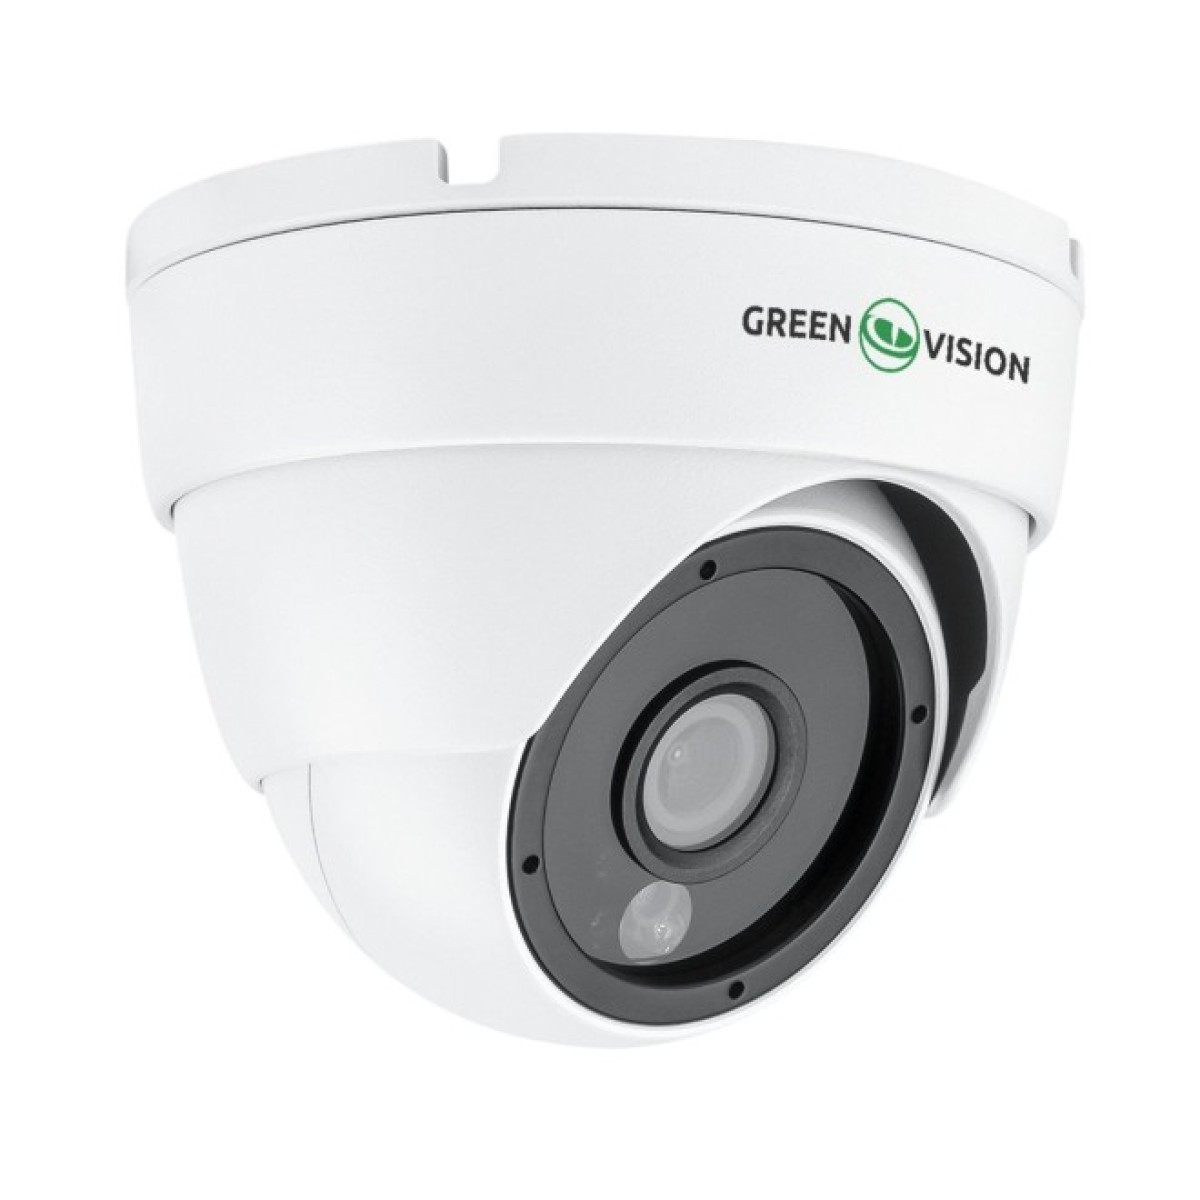 Гибридная антивандальная камера GreenVision GV-180-GHD-H-DOK50-20 98_98.jpg - фото 4